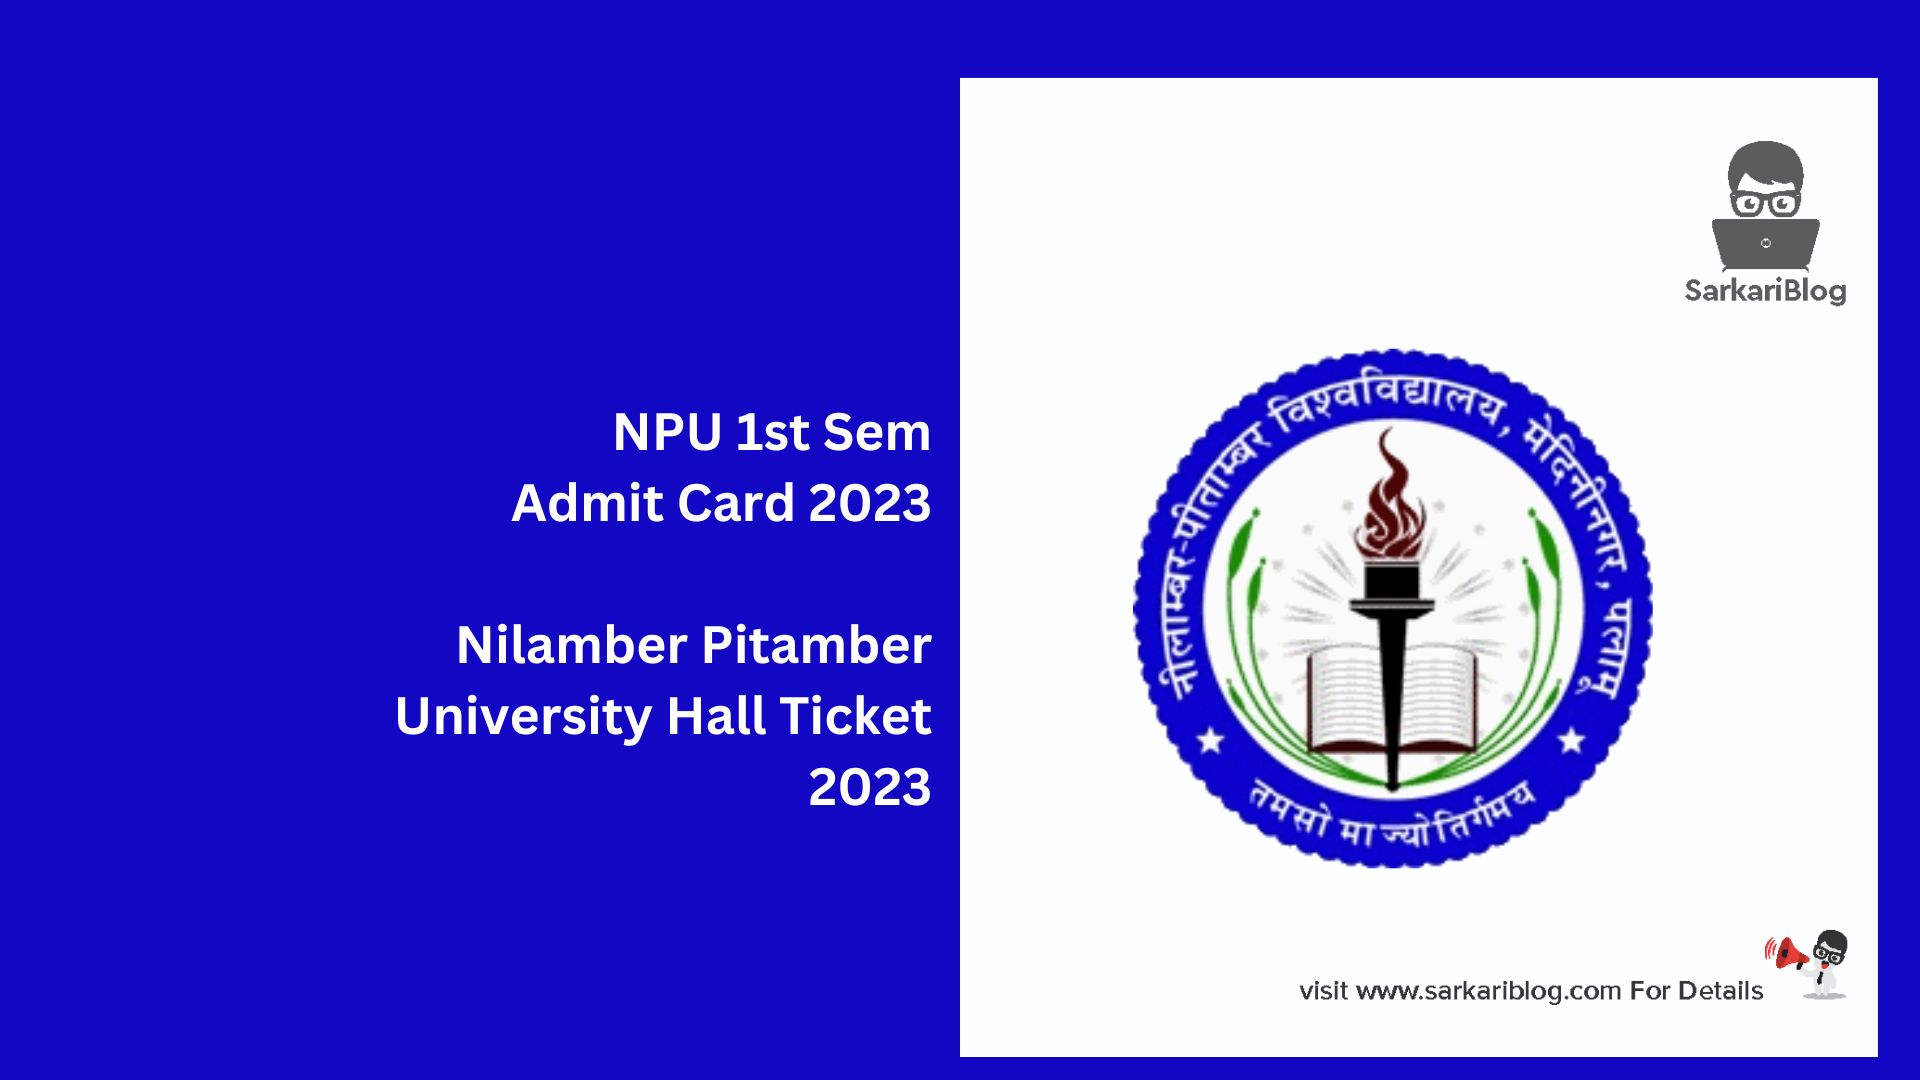 NPU 1st Sem Admit Card 2023